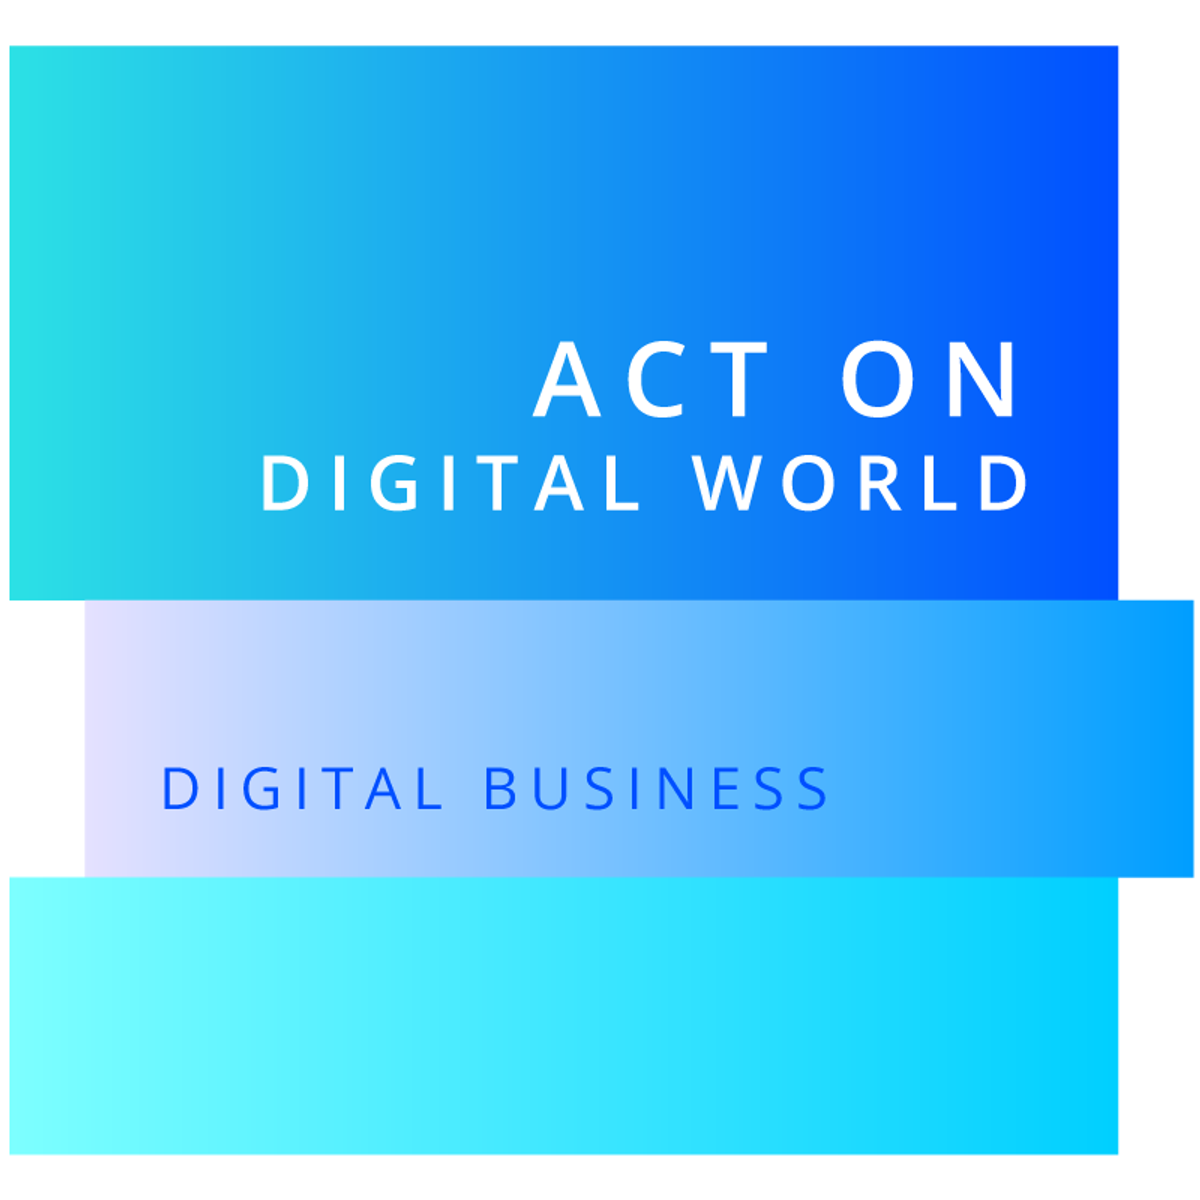 کسب و کار دیجیتال - روی دنیای دیجیتال عمل کنید